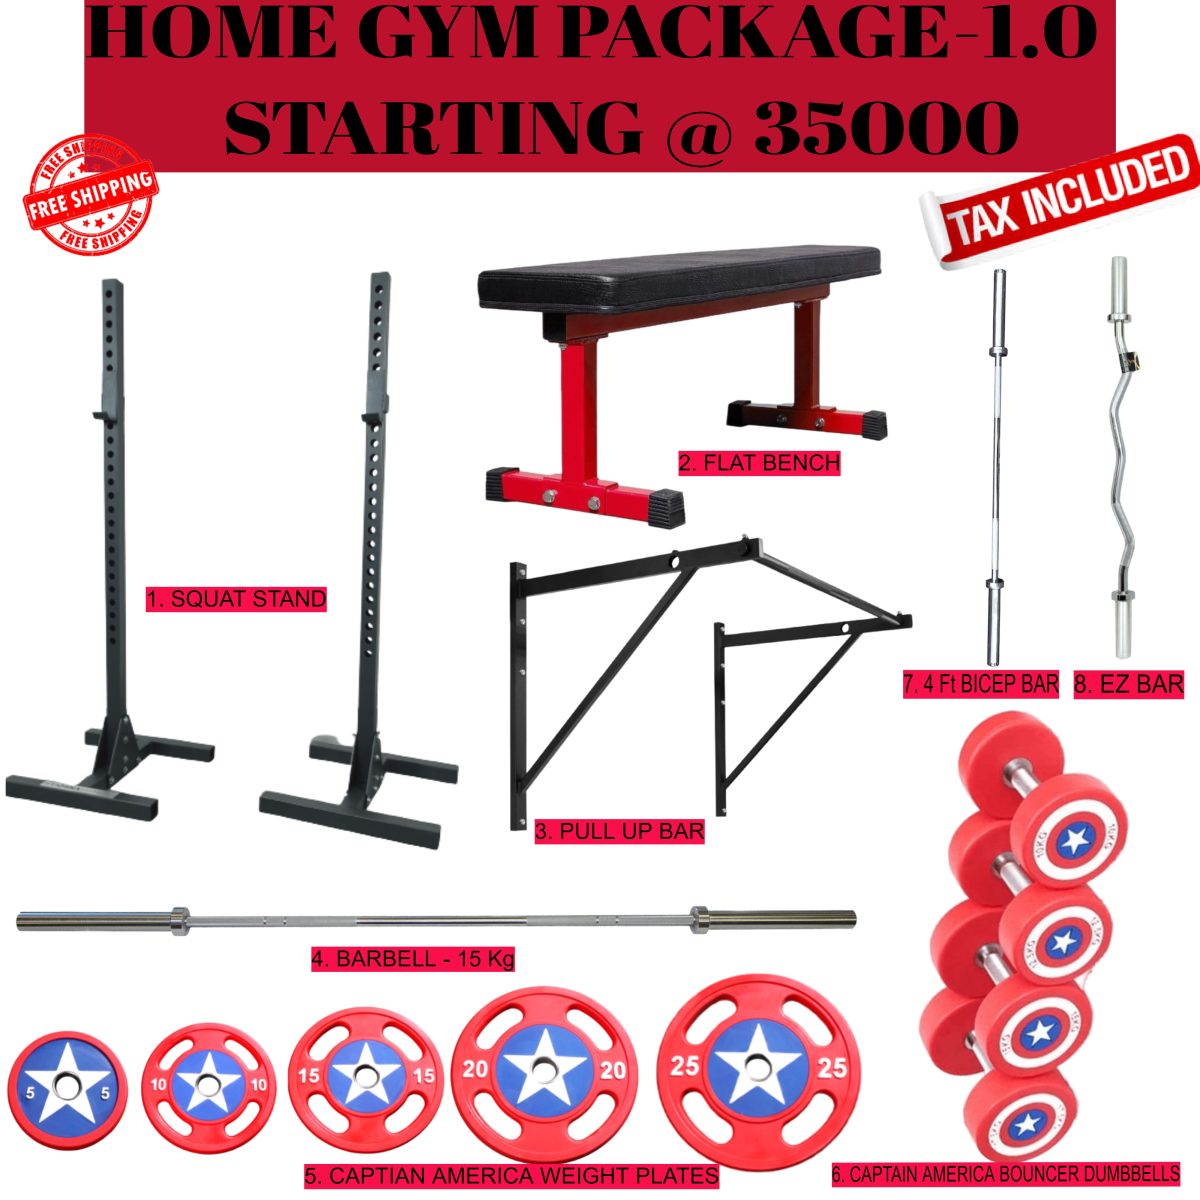 Home gym setup, home gym online, home gym equipment, home gym set, home gym bench, home gym equipment online, home gym equipment all in one